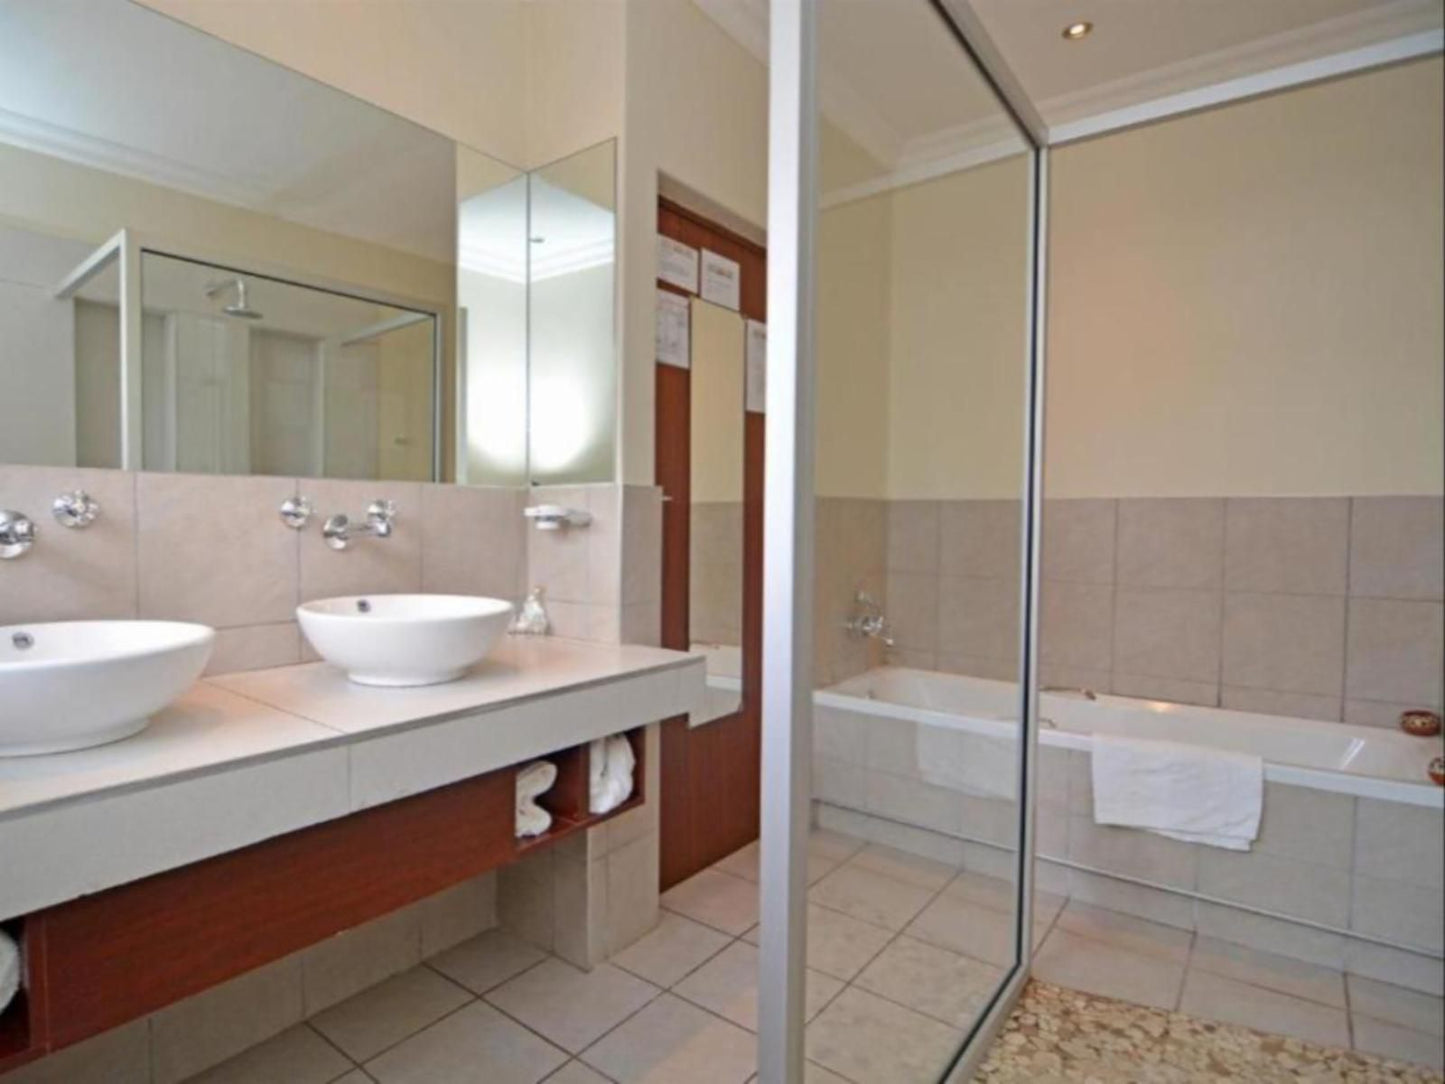 Africa House Guest House Zwartkop Centurion Gauteng South Africa Bathroom